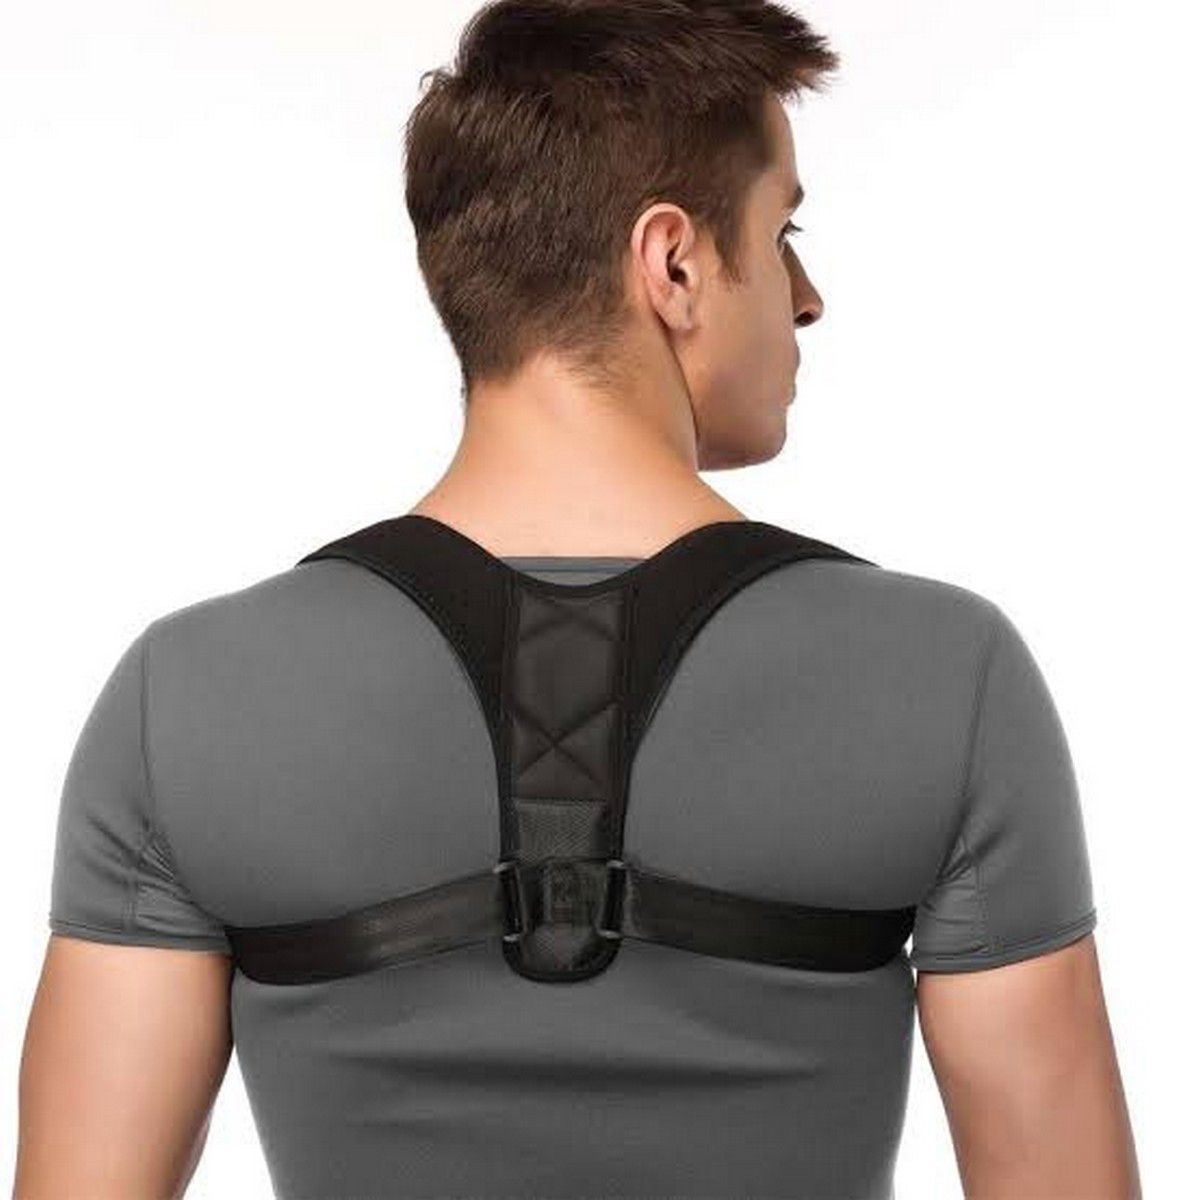 https://www.oshi.pk/images/variation/adjustable-posture-corrector-belt-corset-back-brace-back-belt-lumbar-support-straight-corrector-back-pain-relief-shoulder-back-22902-826.jpg